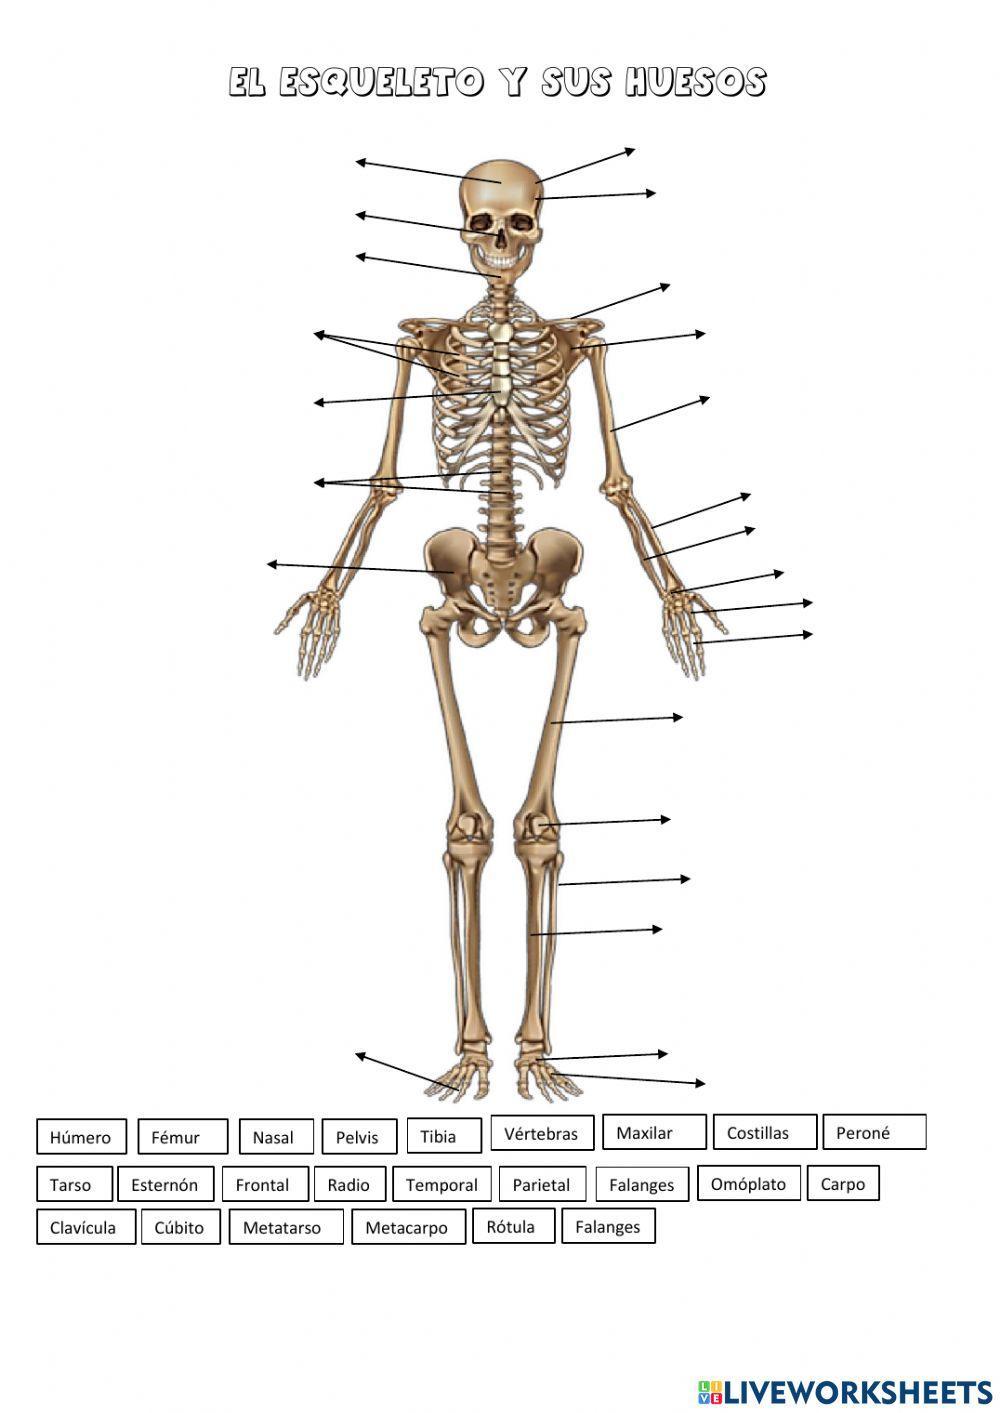 El esqueleto - Los huesos